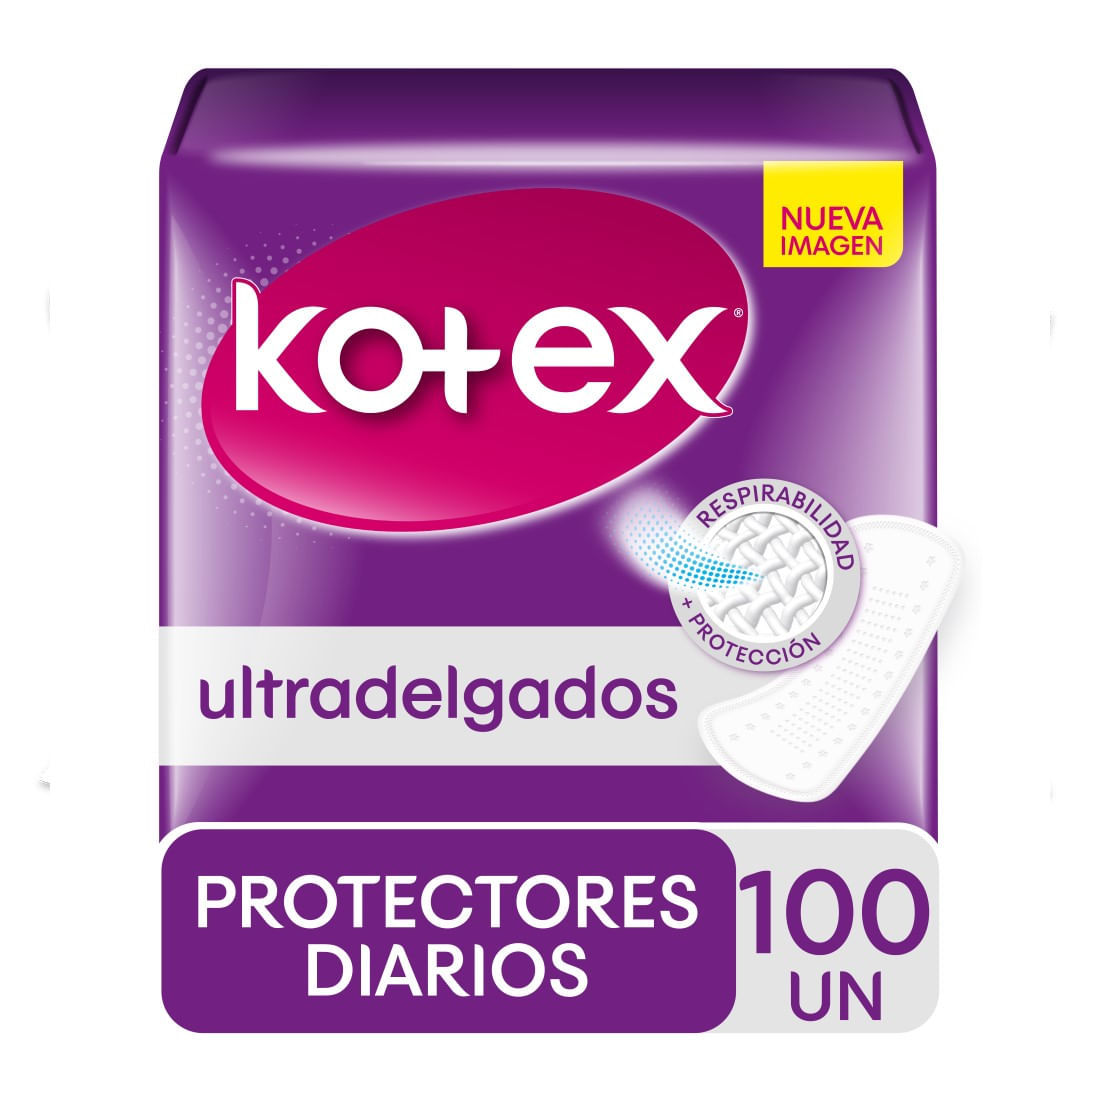 Protector diario Kotex ultra delgado 100 un